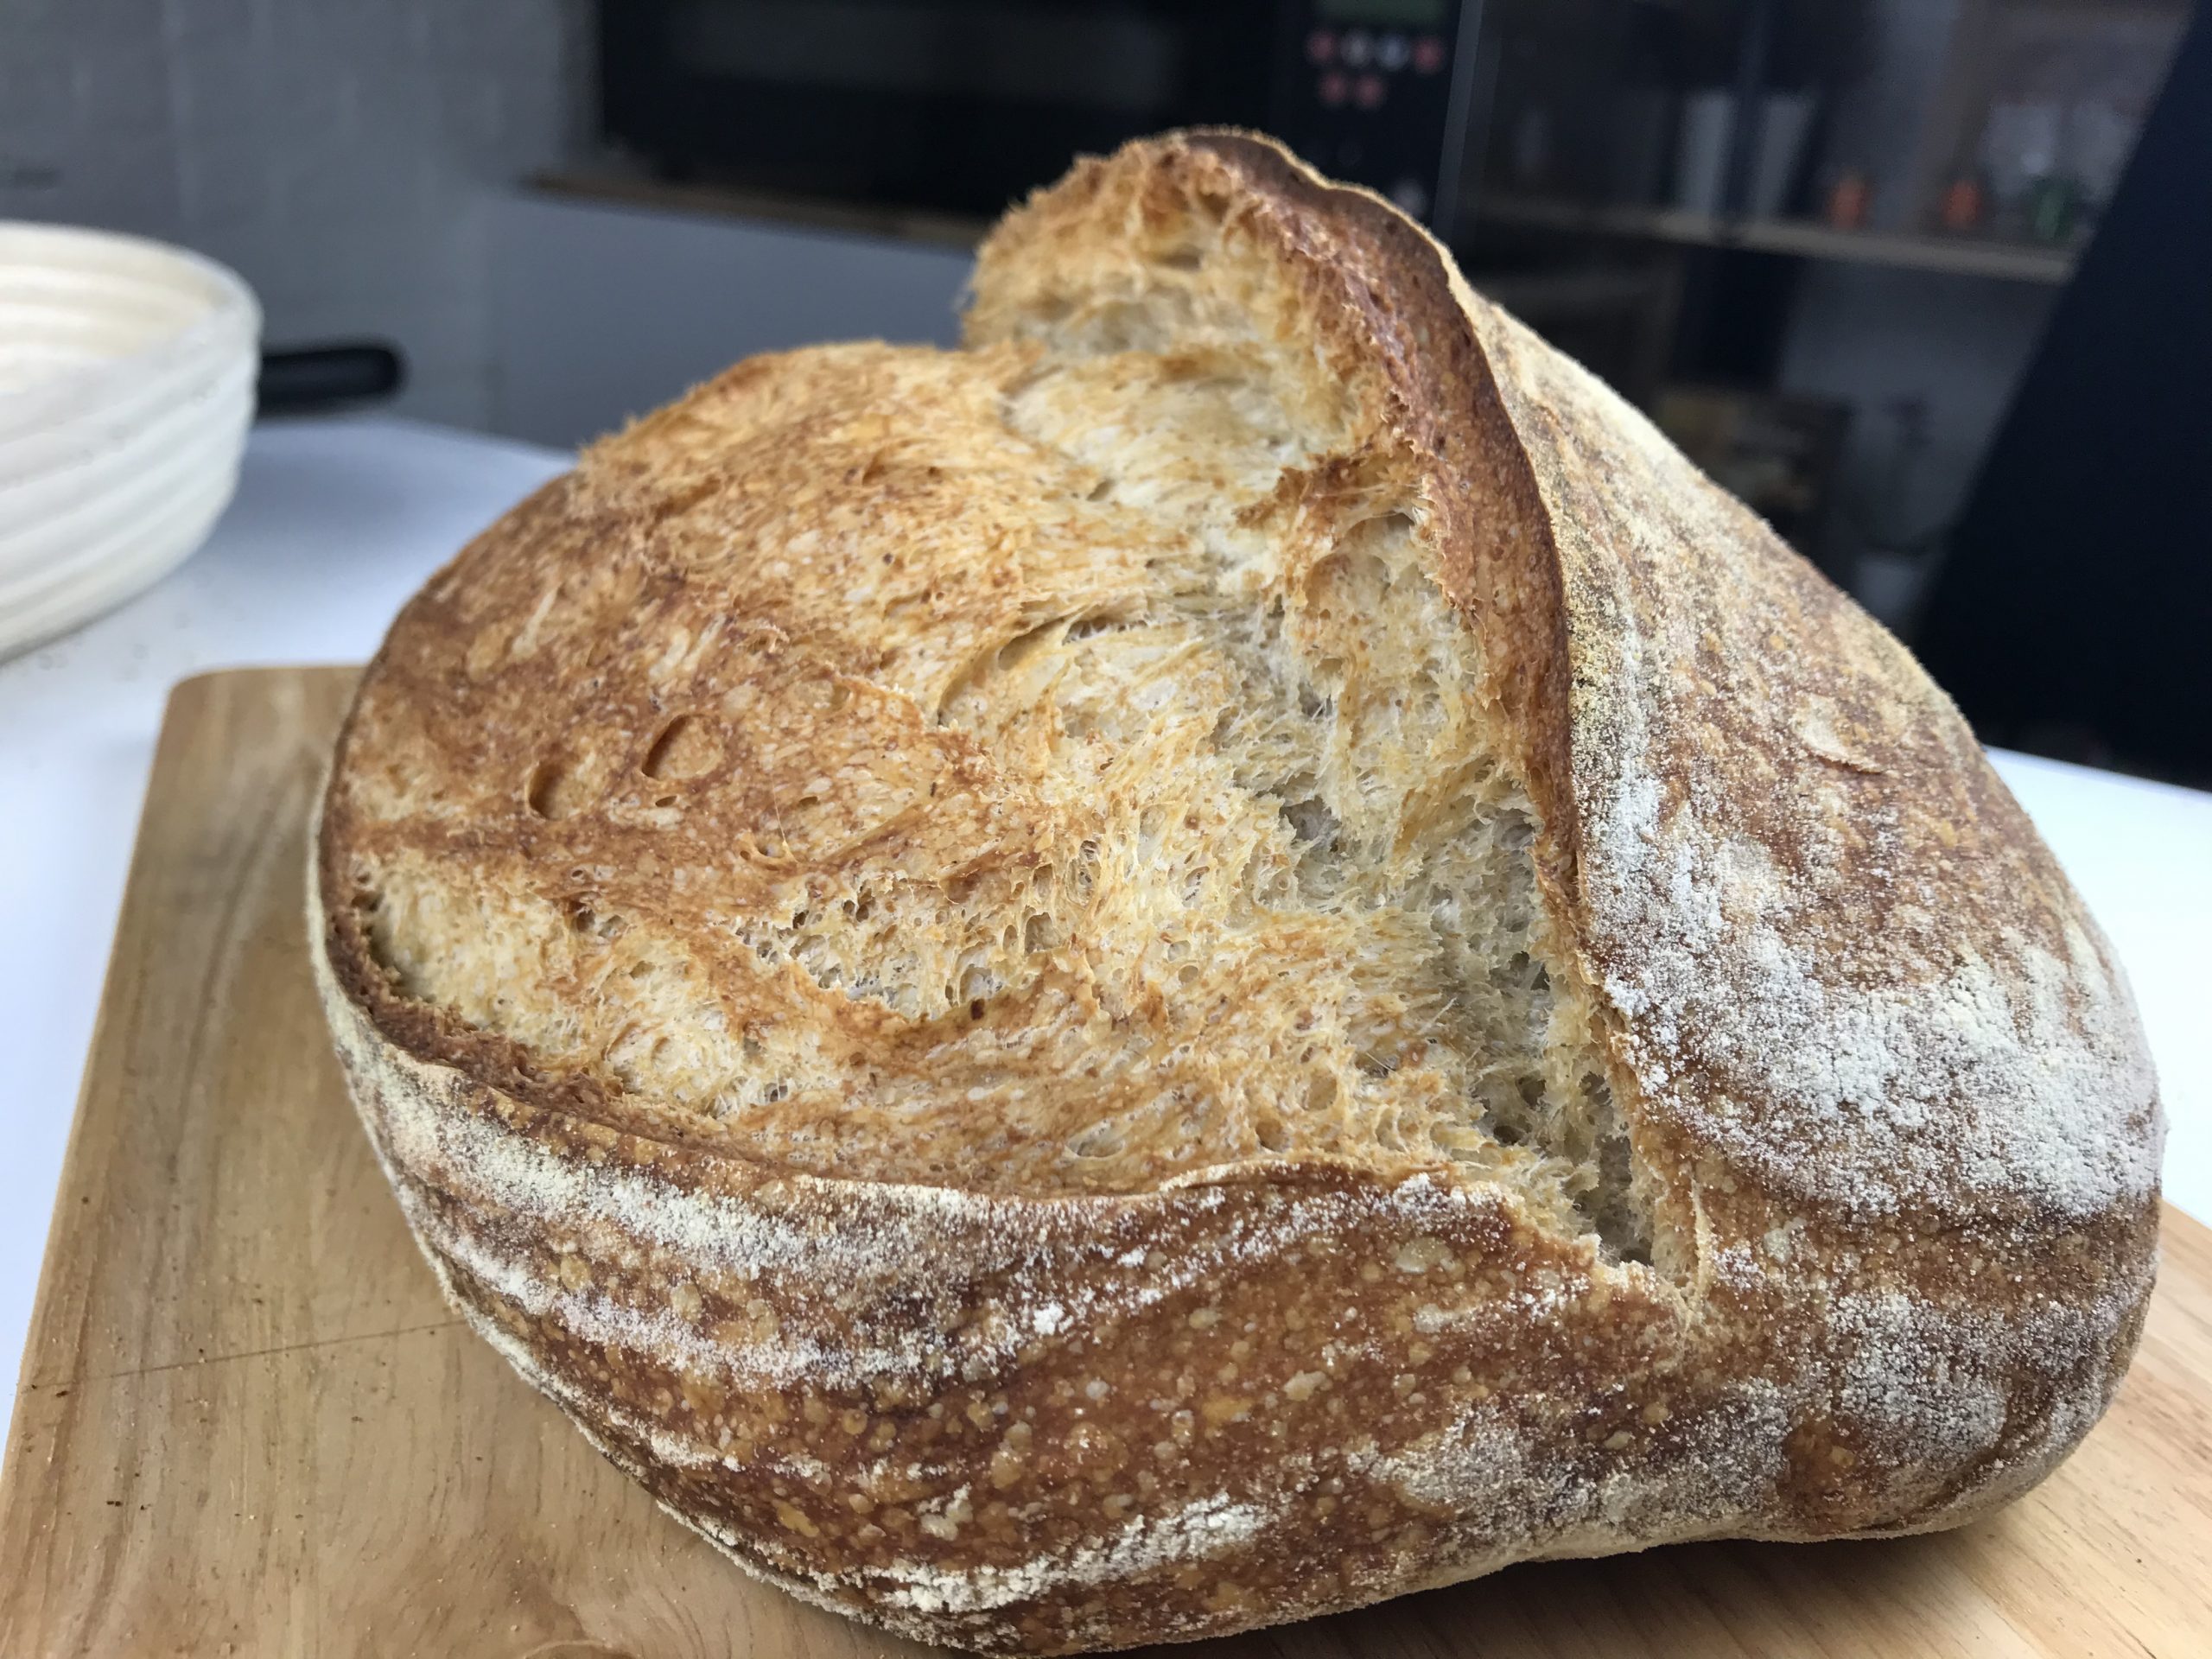 Ricetta pane fatto in casa con malto